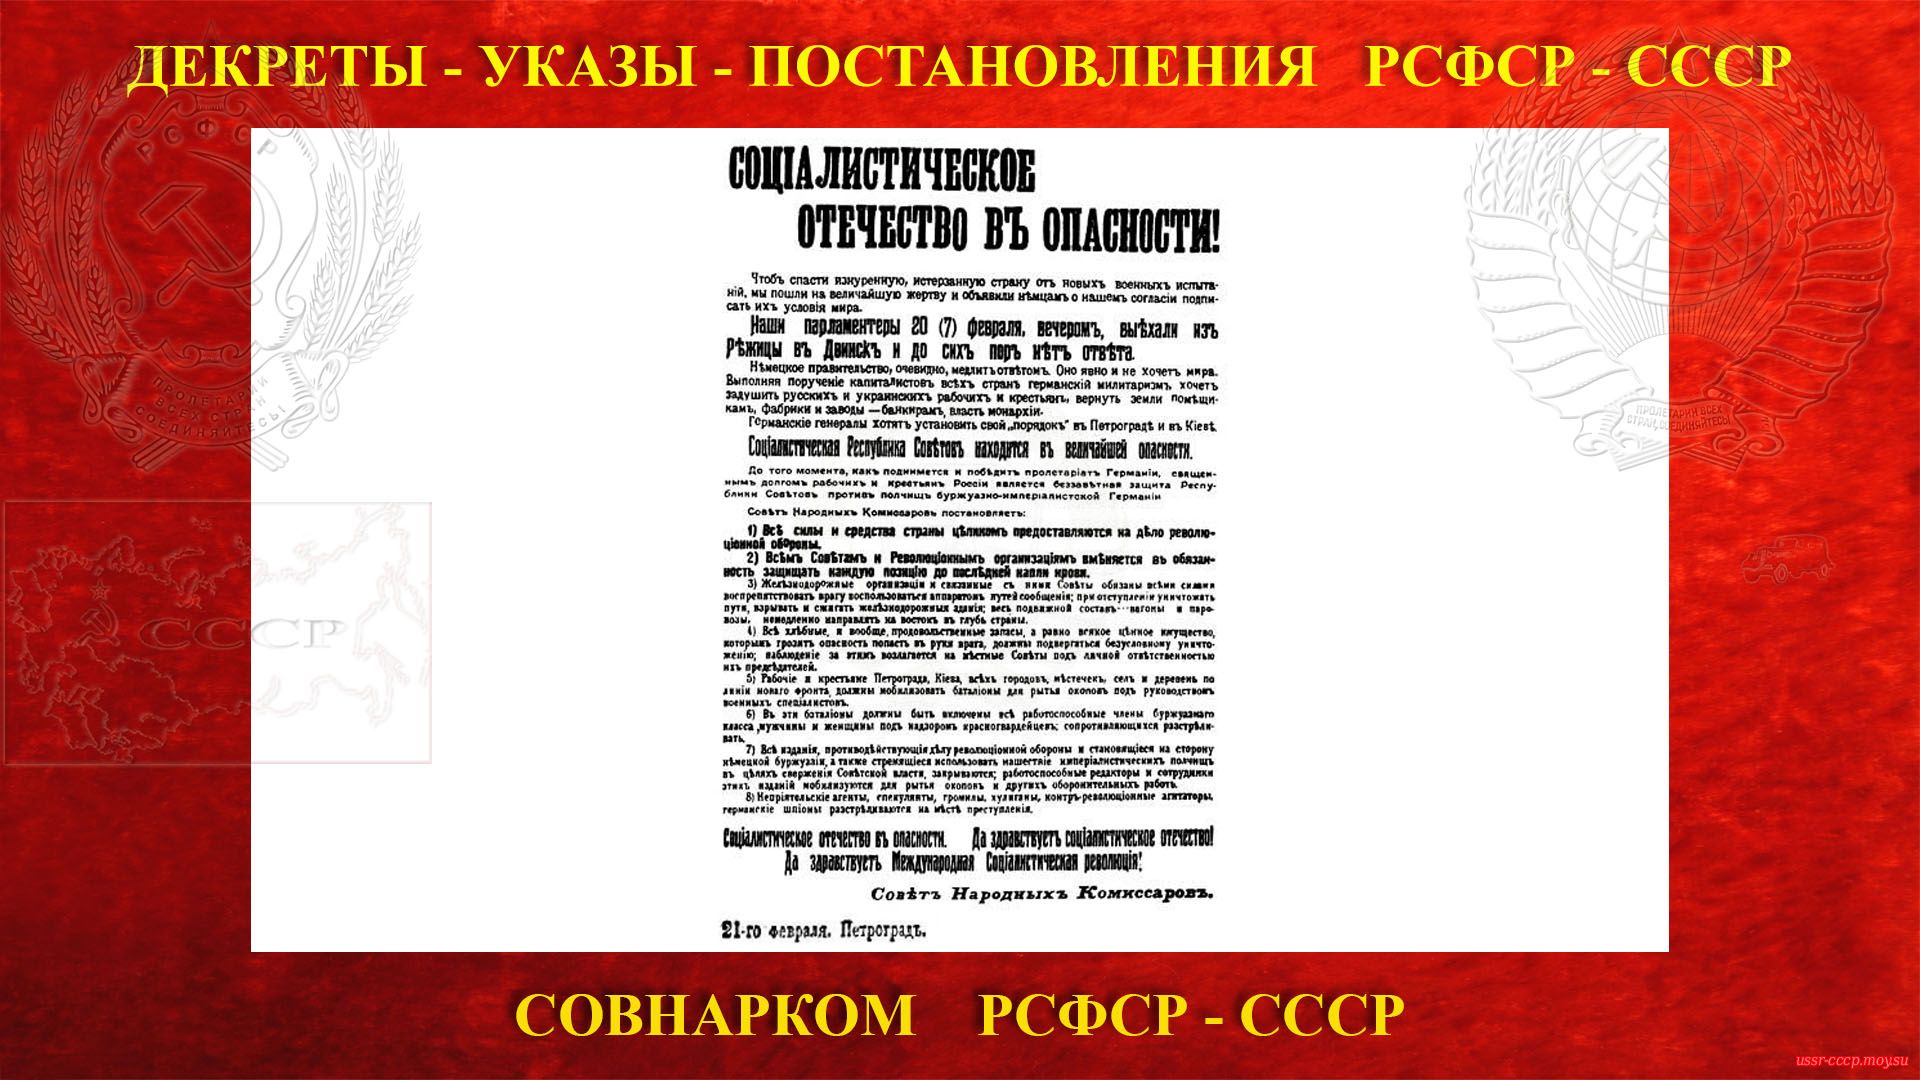 Социалистическое отечество в опасности! — Декрет СНК РСФСР (21.02.1918) (повествование)